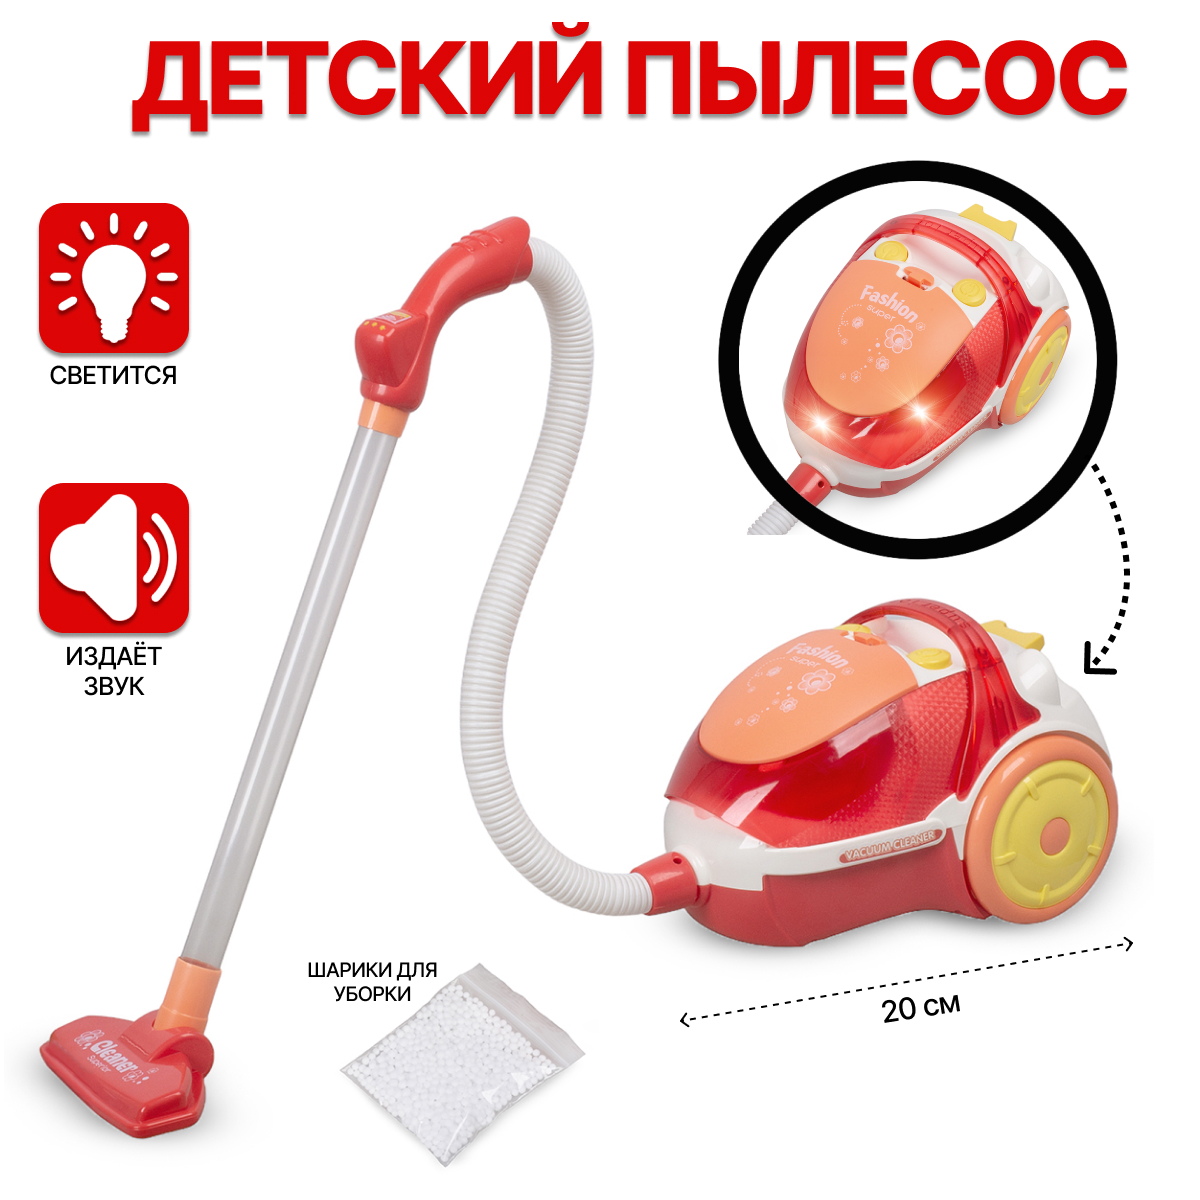 Пылесос игрушечный со световыми эффектами, всасывает мусор 8019 пылесос samsung vc15k4116vr ev 1500вт красный